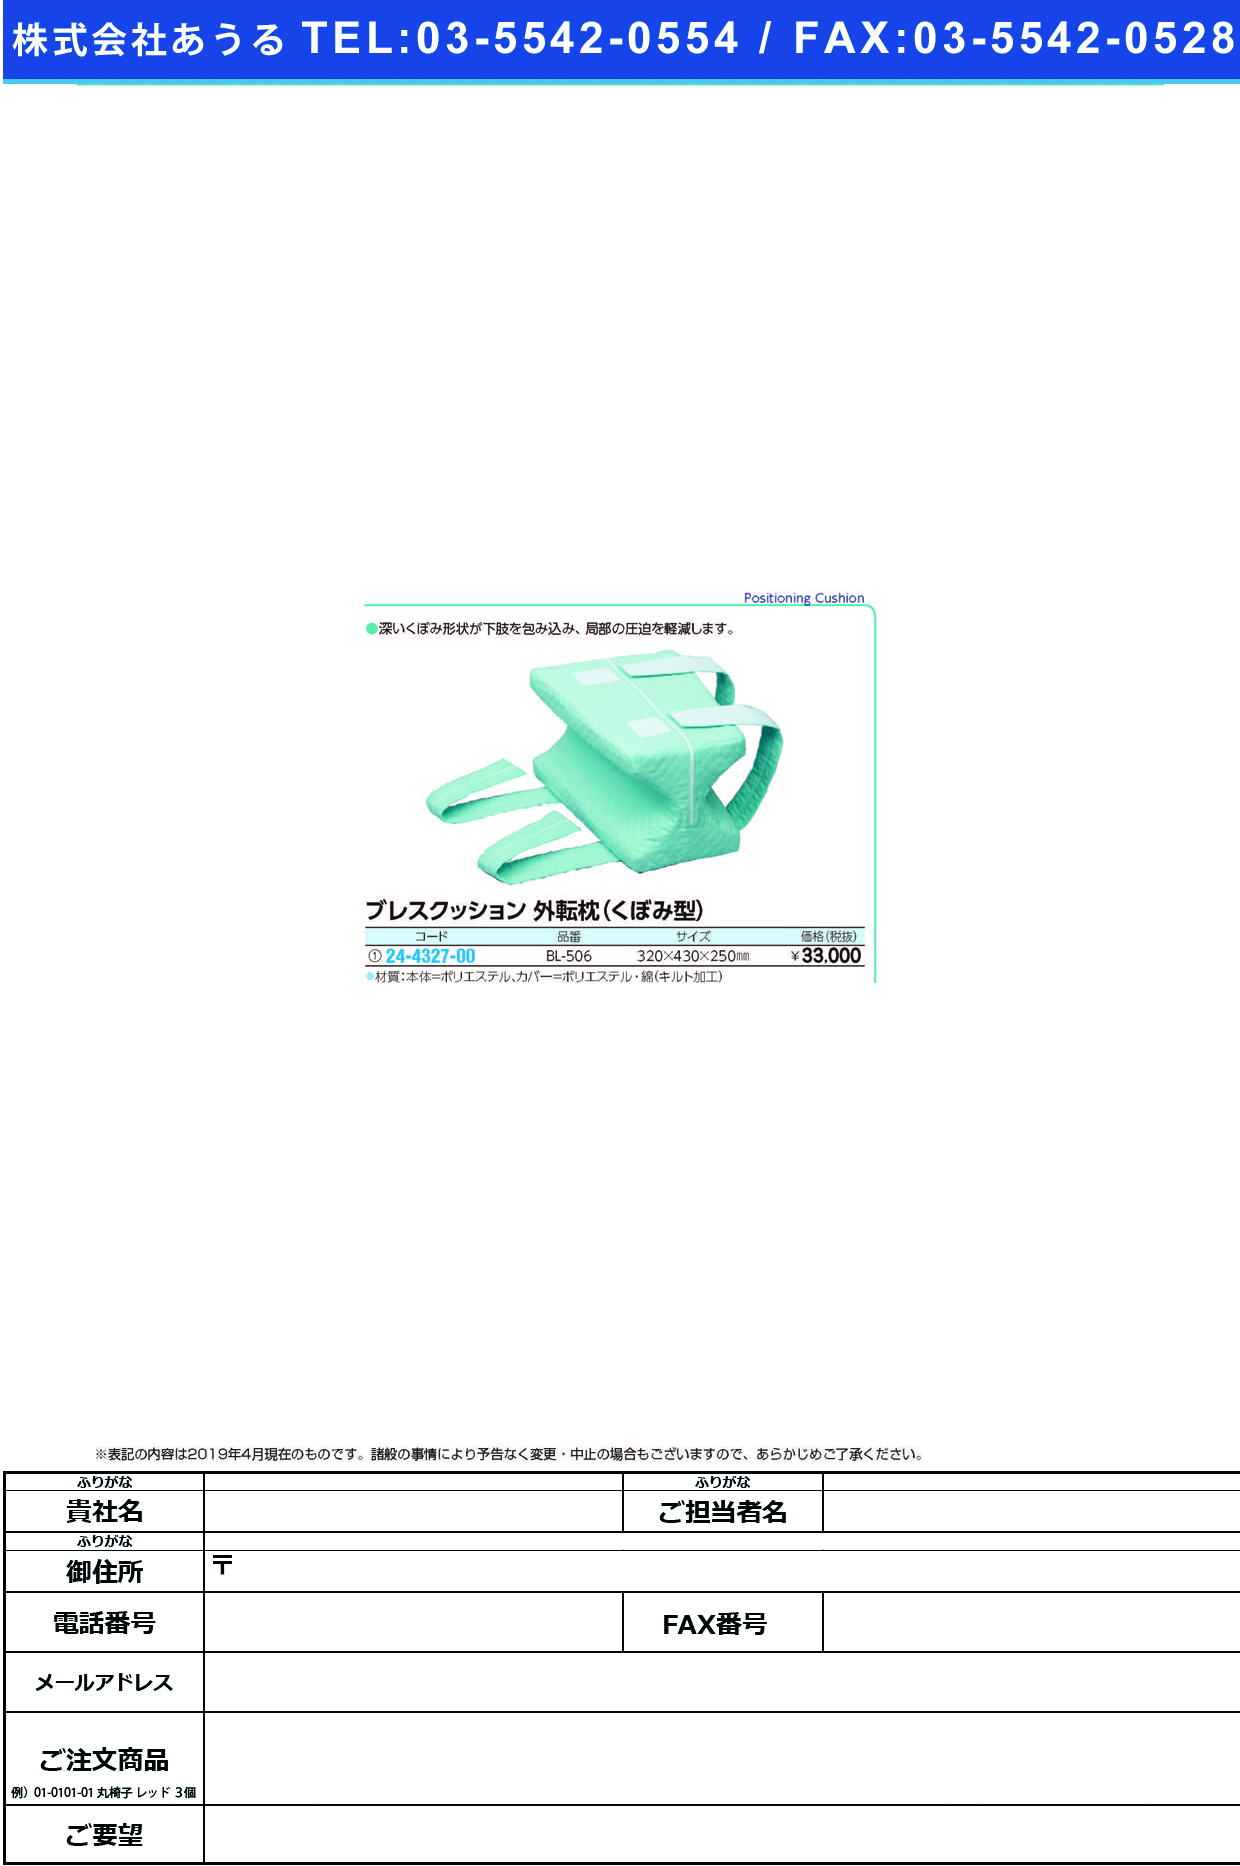 (24-4327-00)ブレスクッション（外転枕・くぼみ型） BL-506 ﾌﾞﾚｽｸｯｼｮﾝ(ｶﾞｲﾃﾝﾏｸﾗ)【1個単位】【2019年カタログ商品】